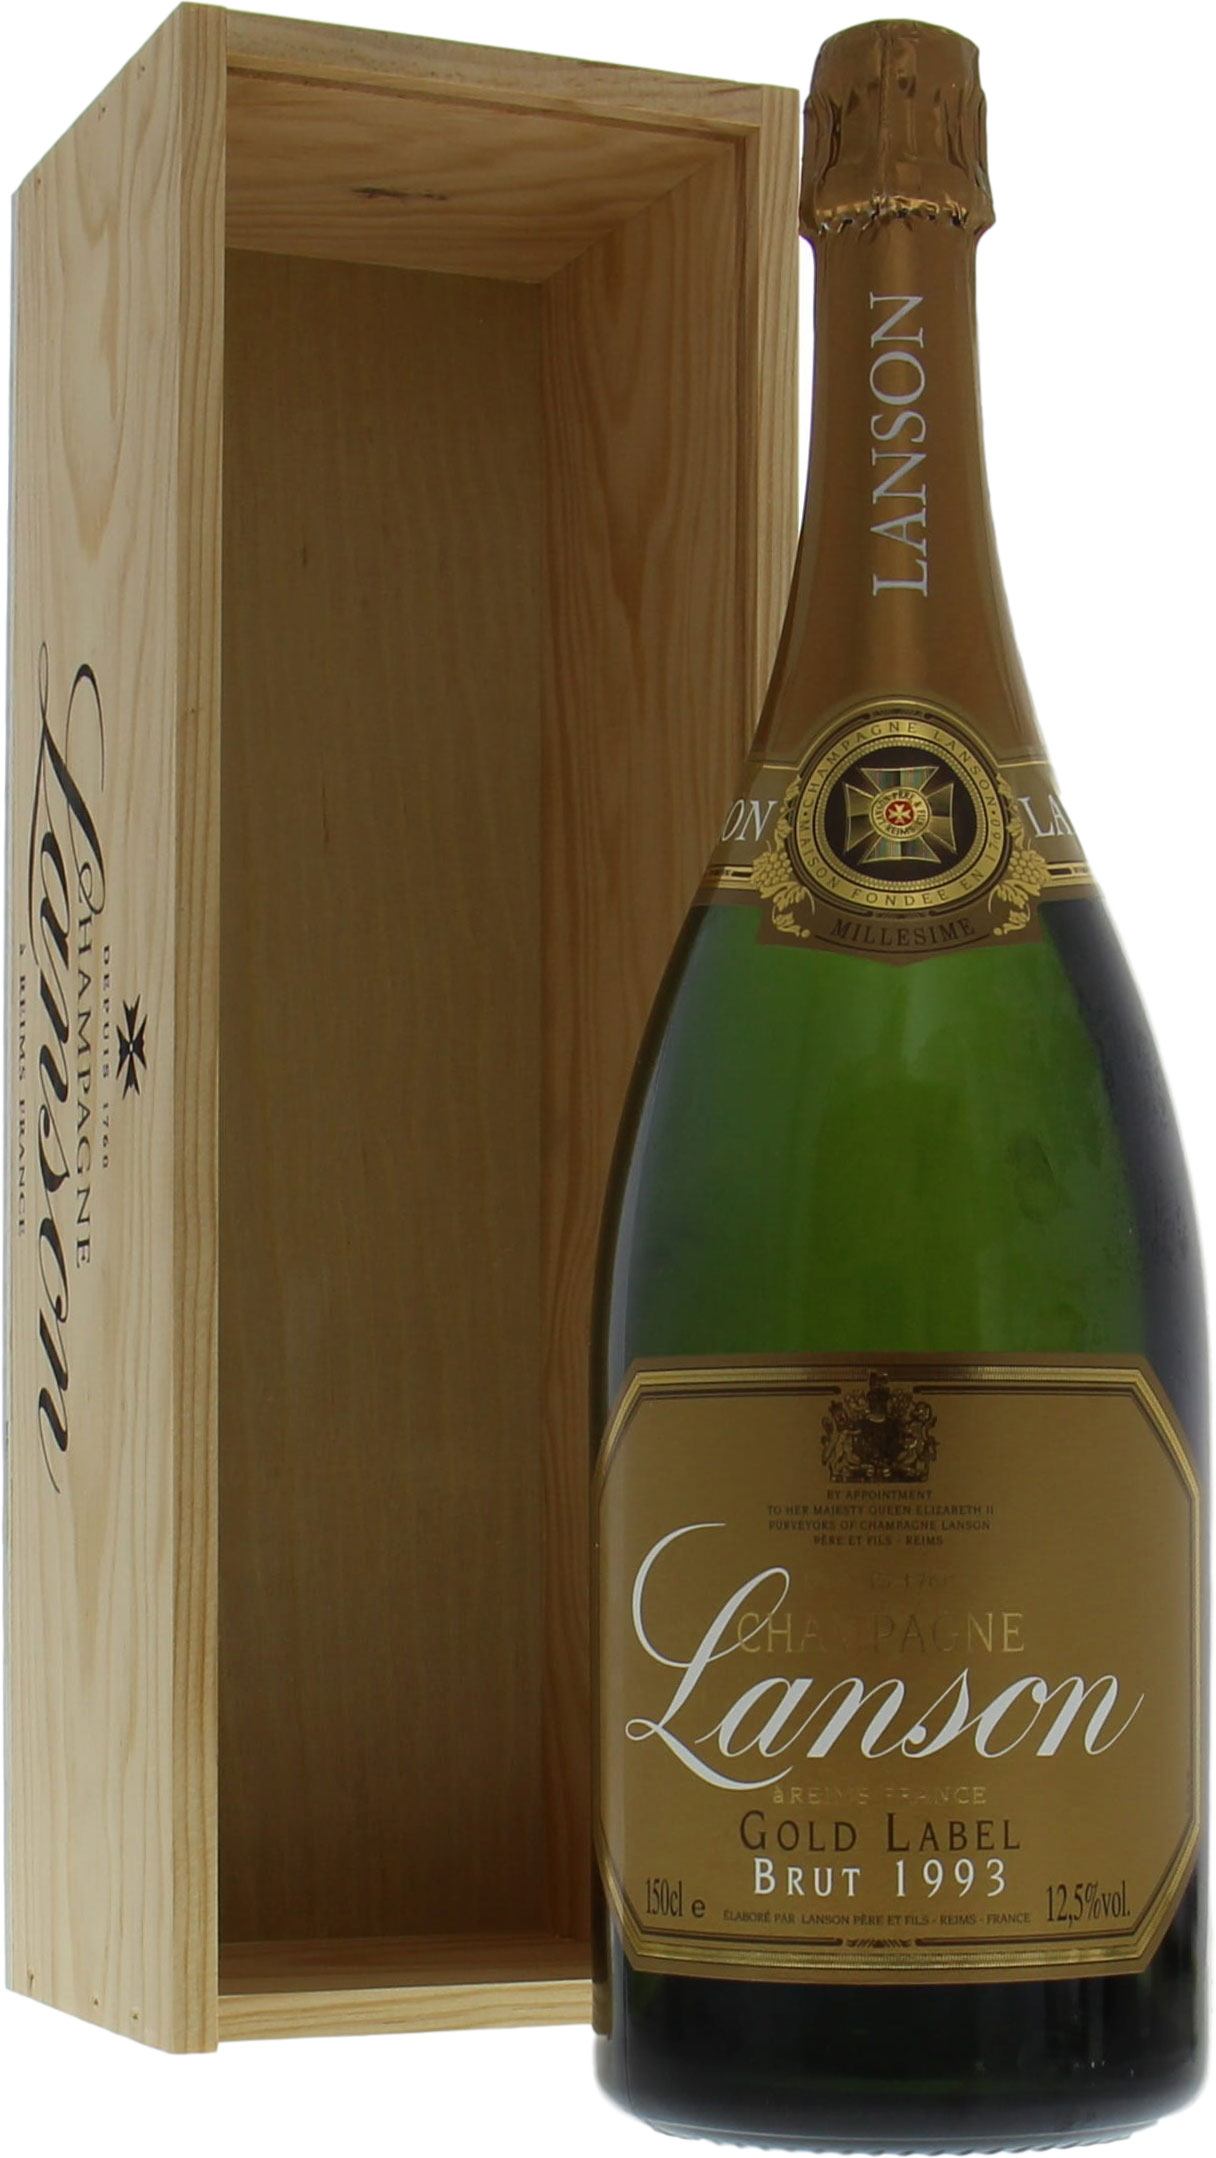 Lanson capsule de champagne LANSON n° 121a millésime 1979 